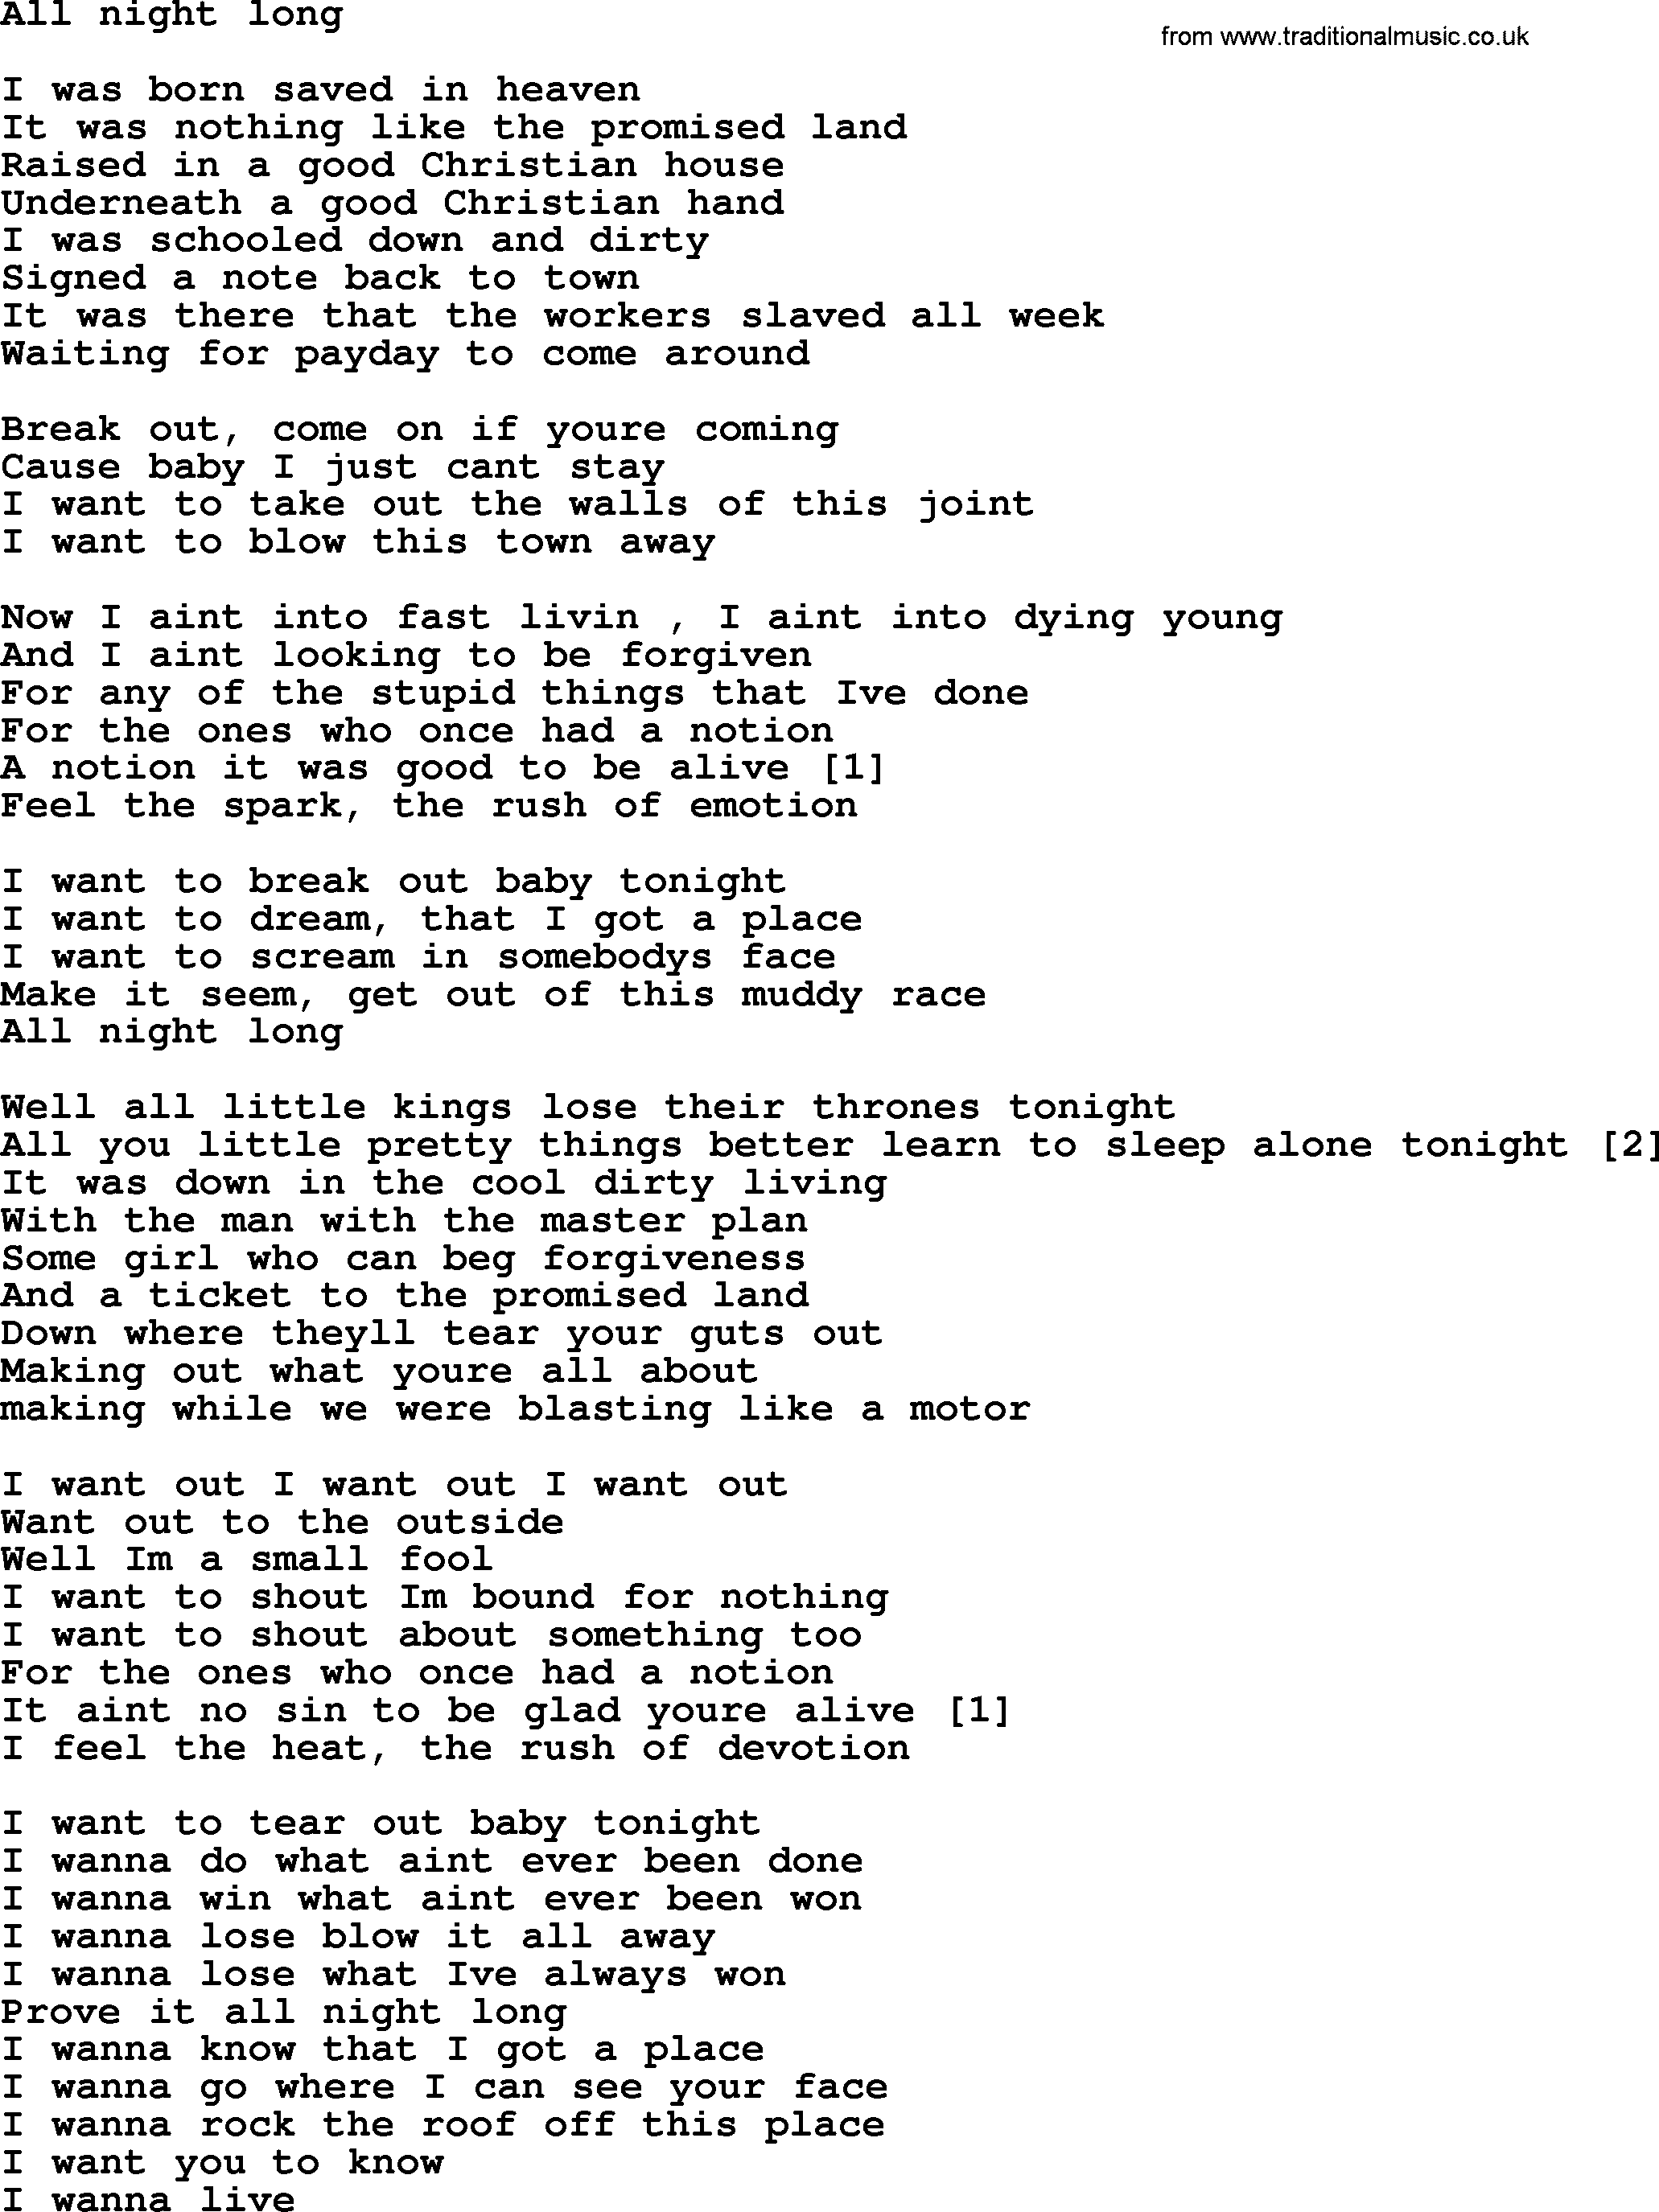 Bruce Springsteen song: All Night Long lyrics